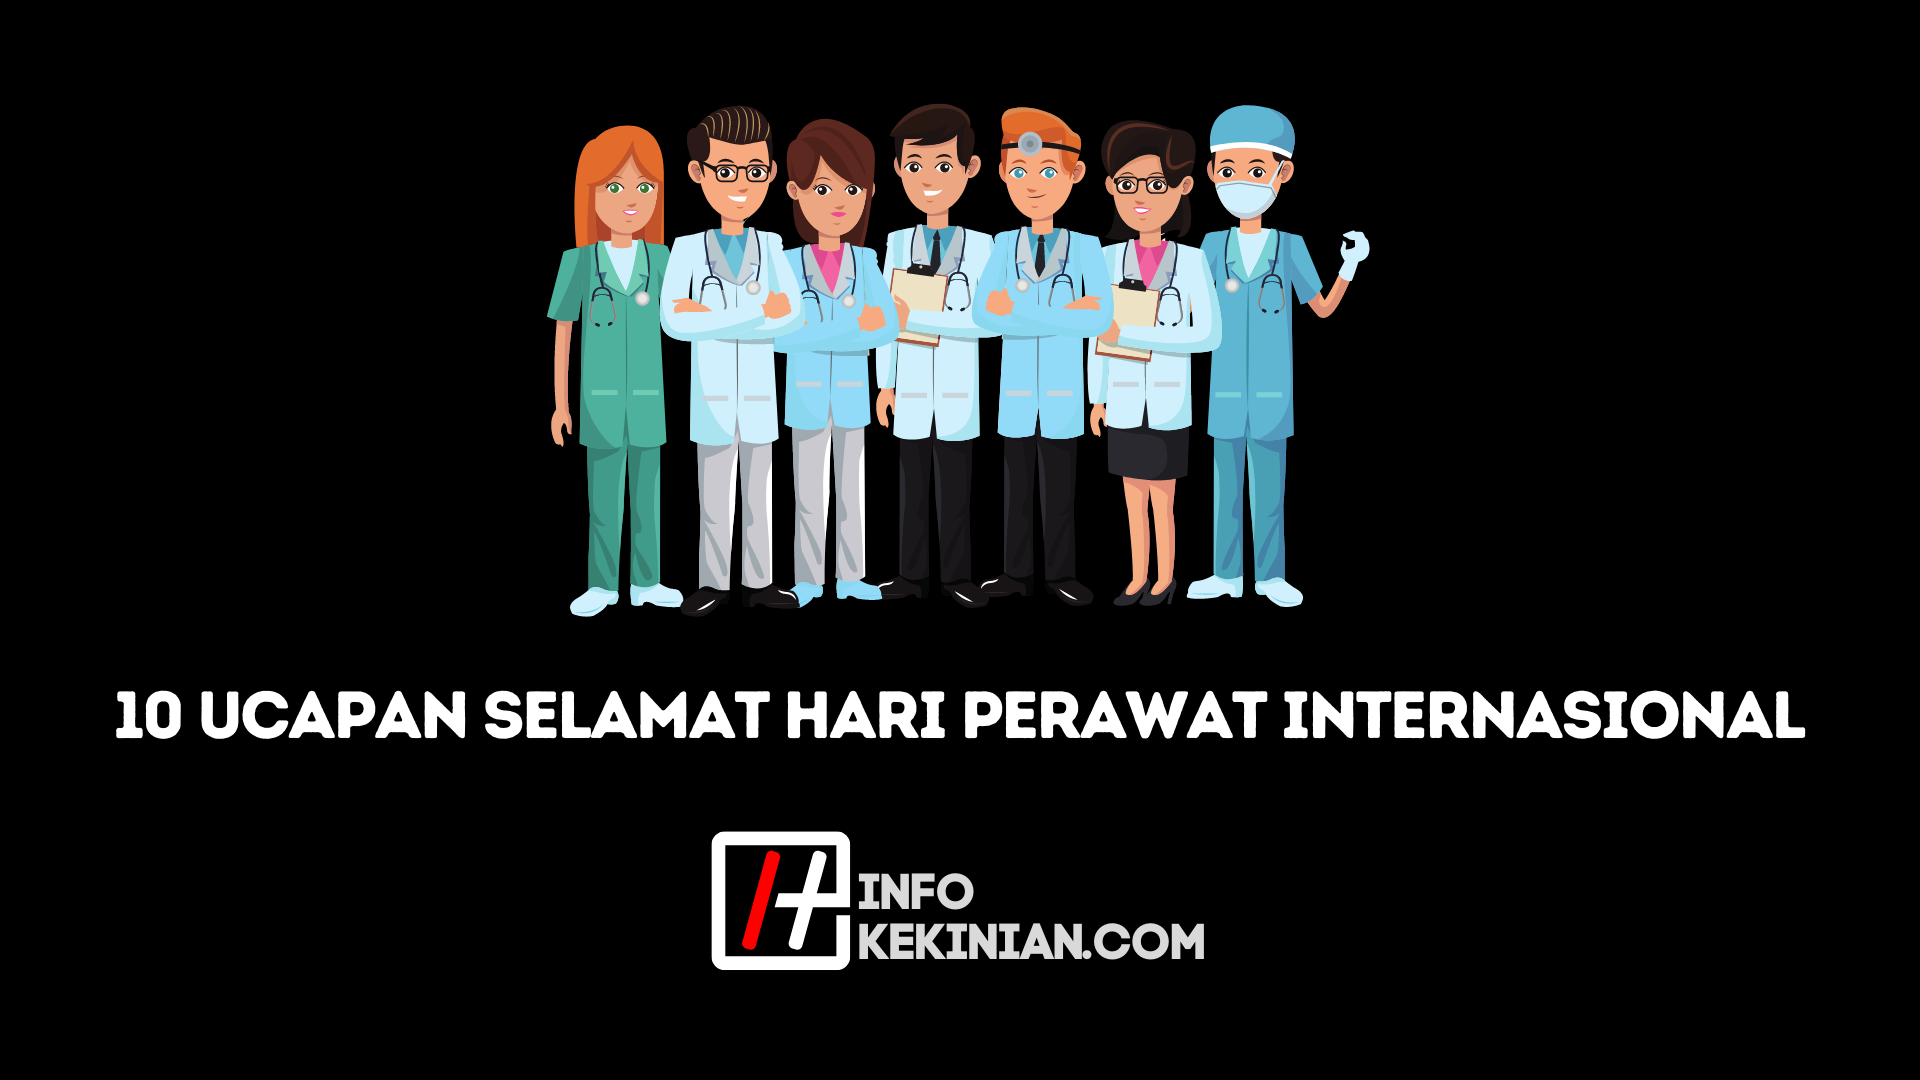 Salutations Bonne journée internationale des infirmières